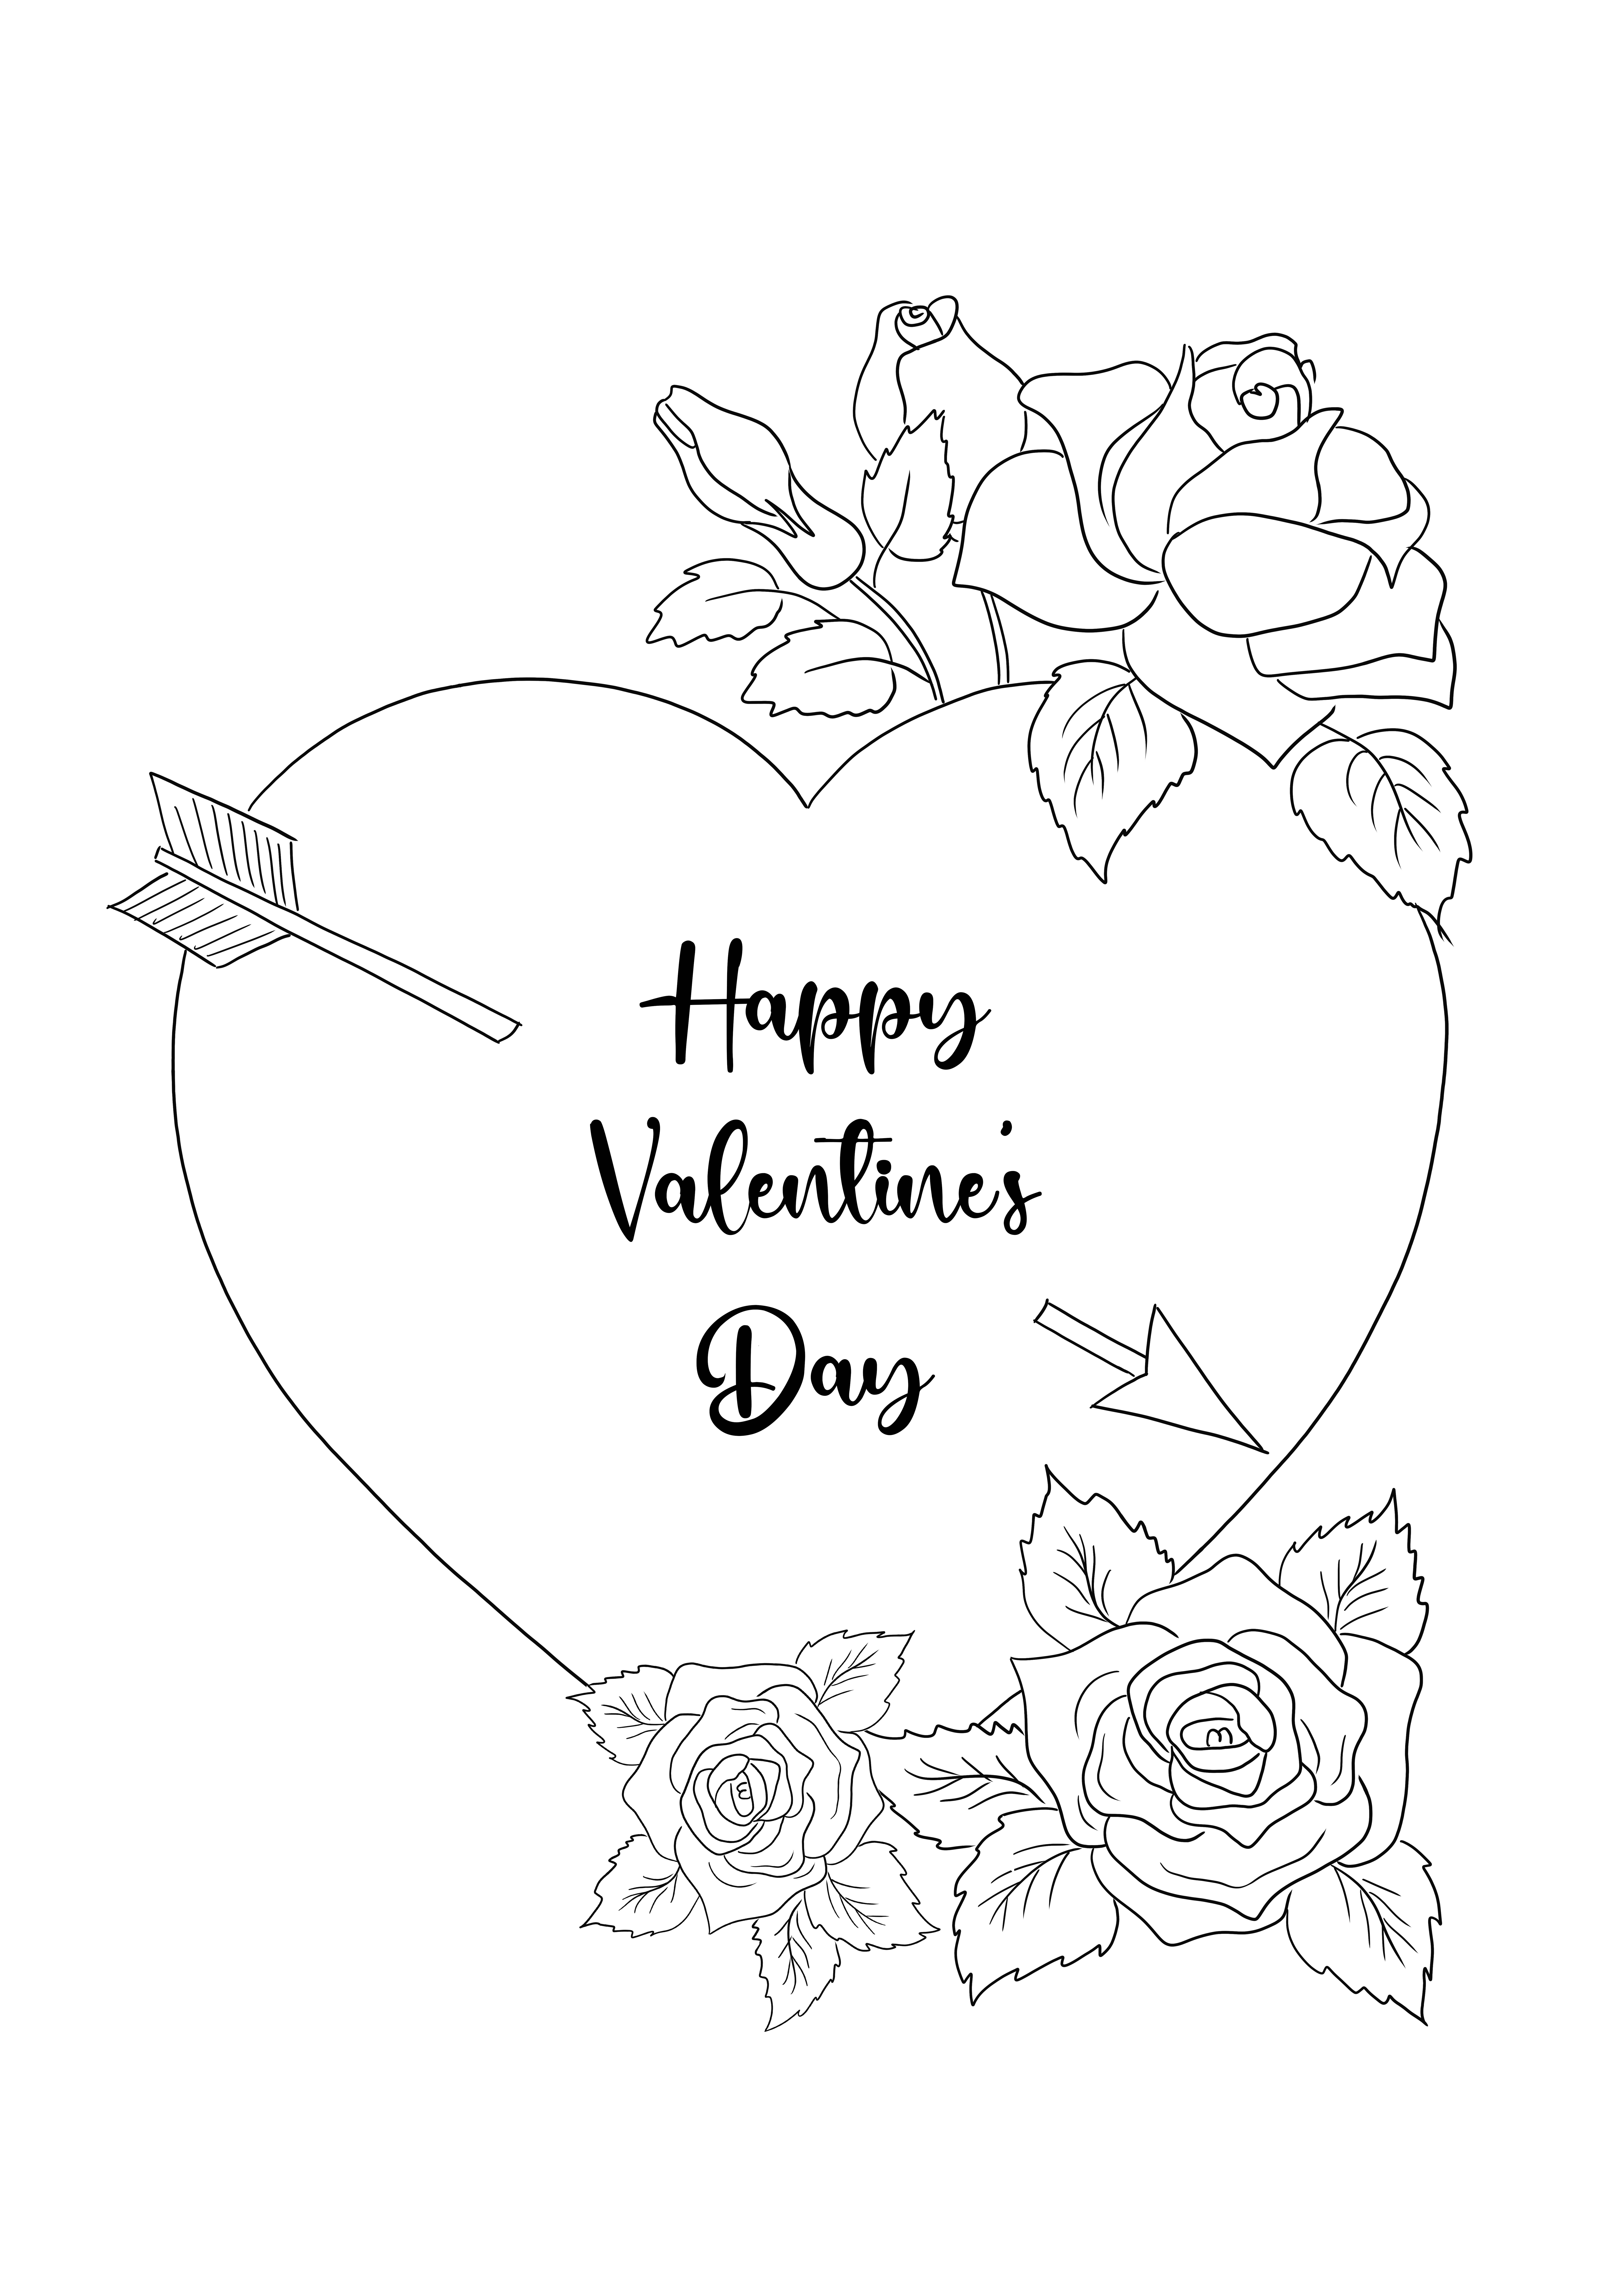 Disegni da colorare di Happy Valentine's Day Card per tutti gli innamorati, piccoli o grandi per il download gratuito